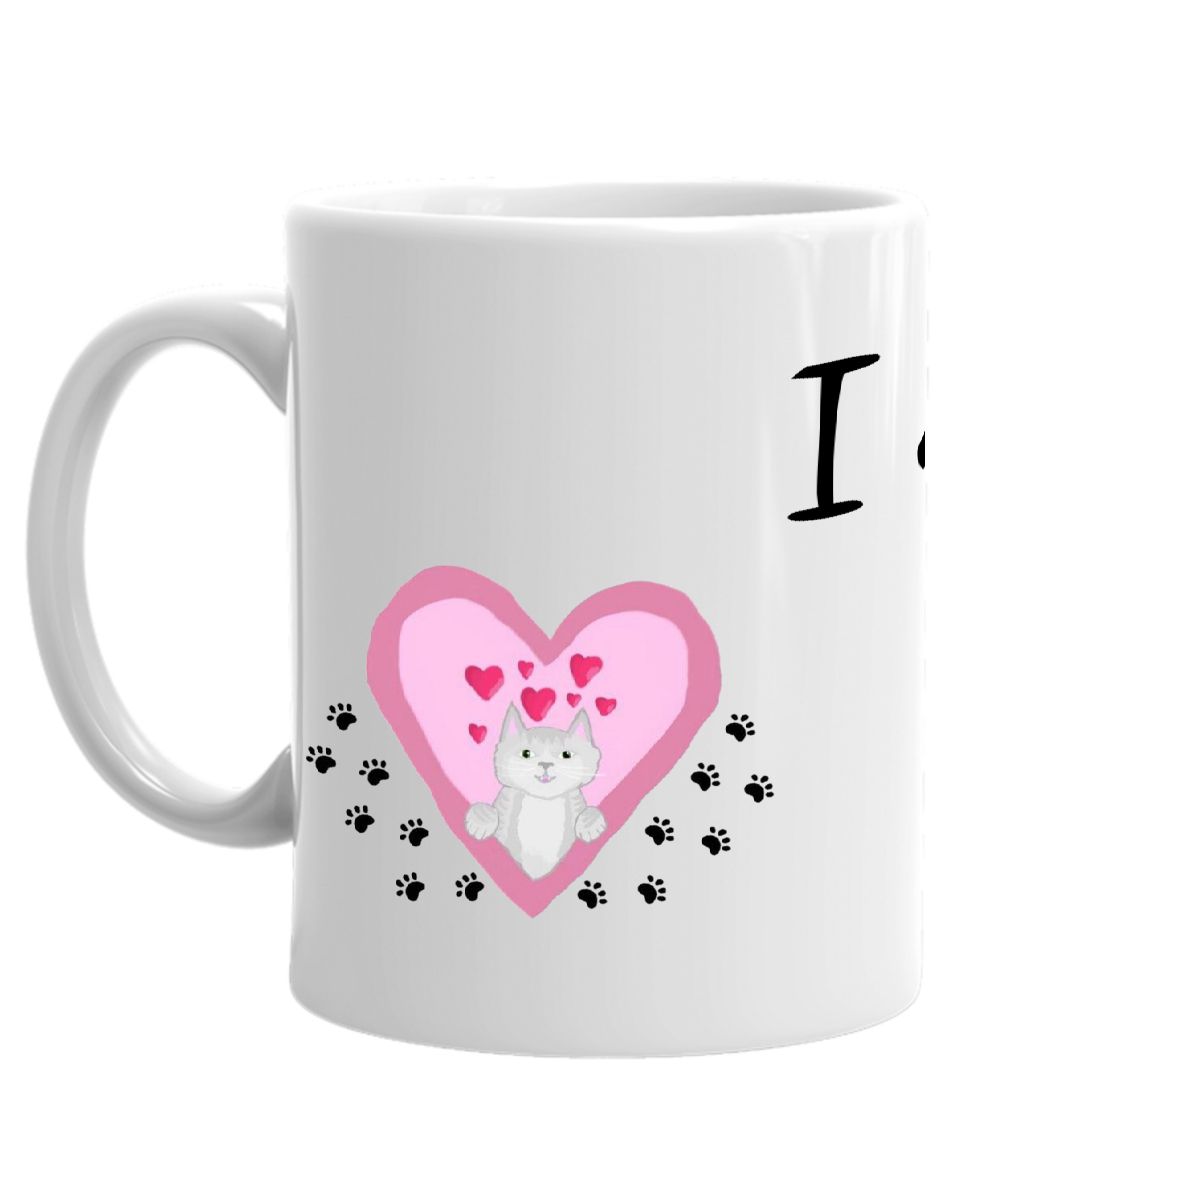 Kitty Heart Mug